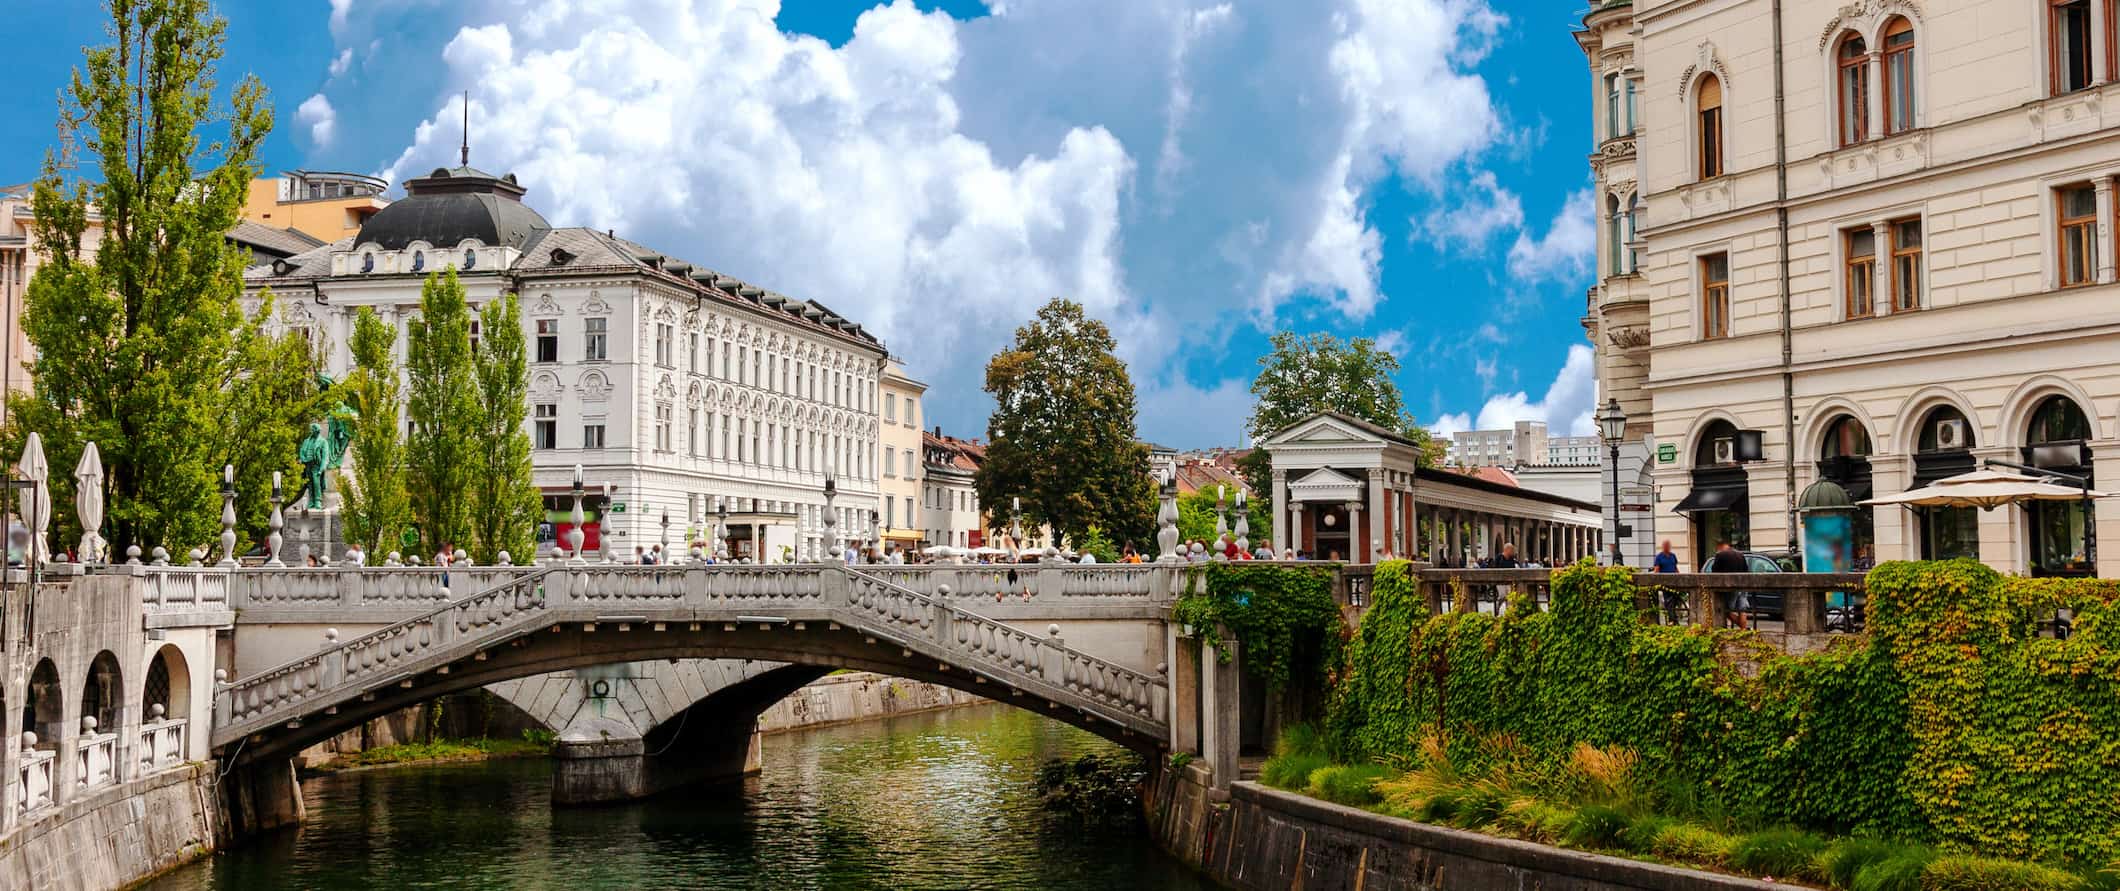 Edifícios Históricos de Ljubljana ao longo do canal na Eslovênia em um dia ensolarado